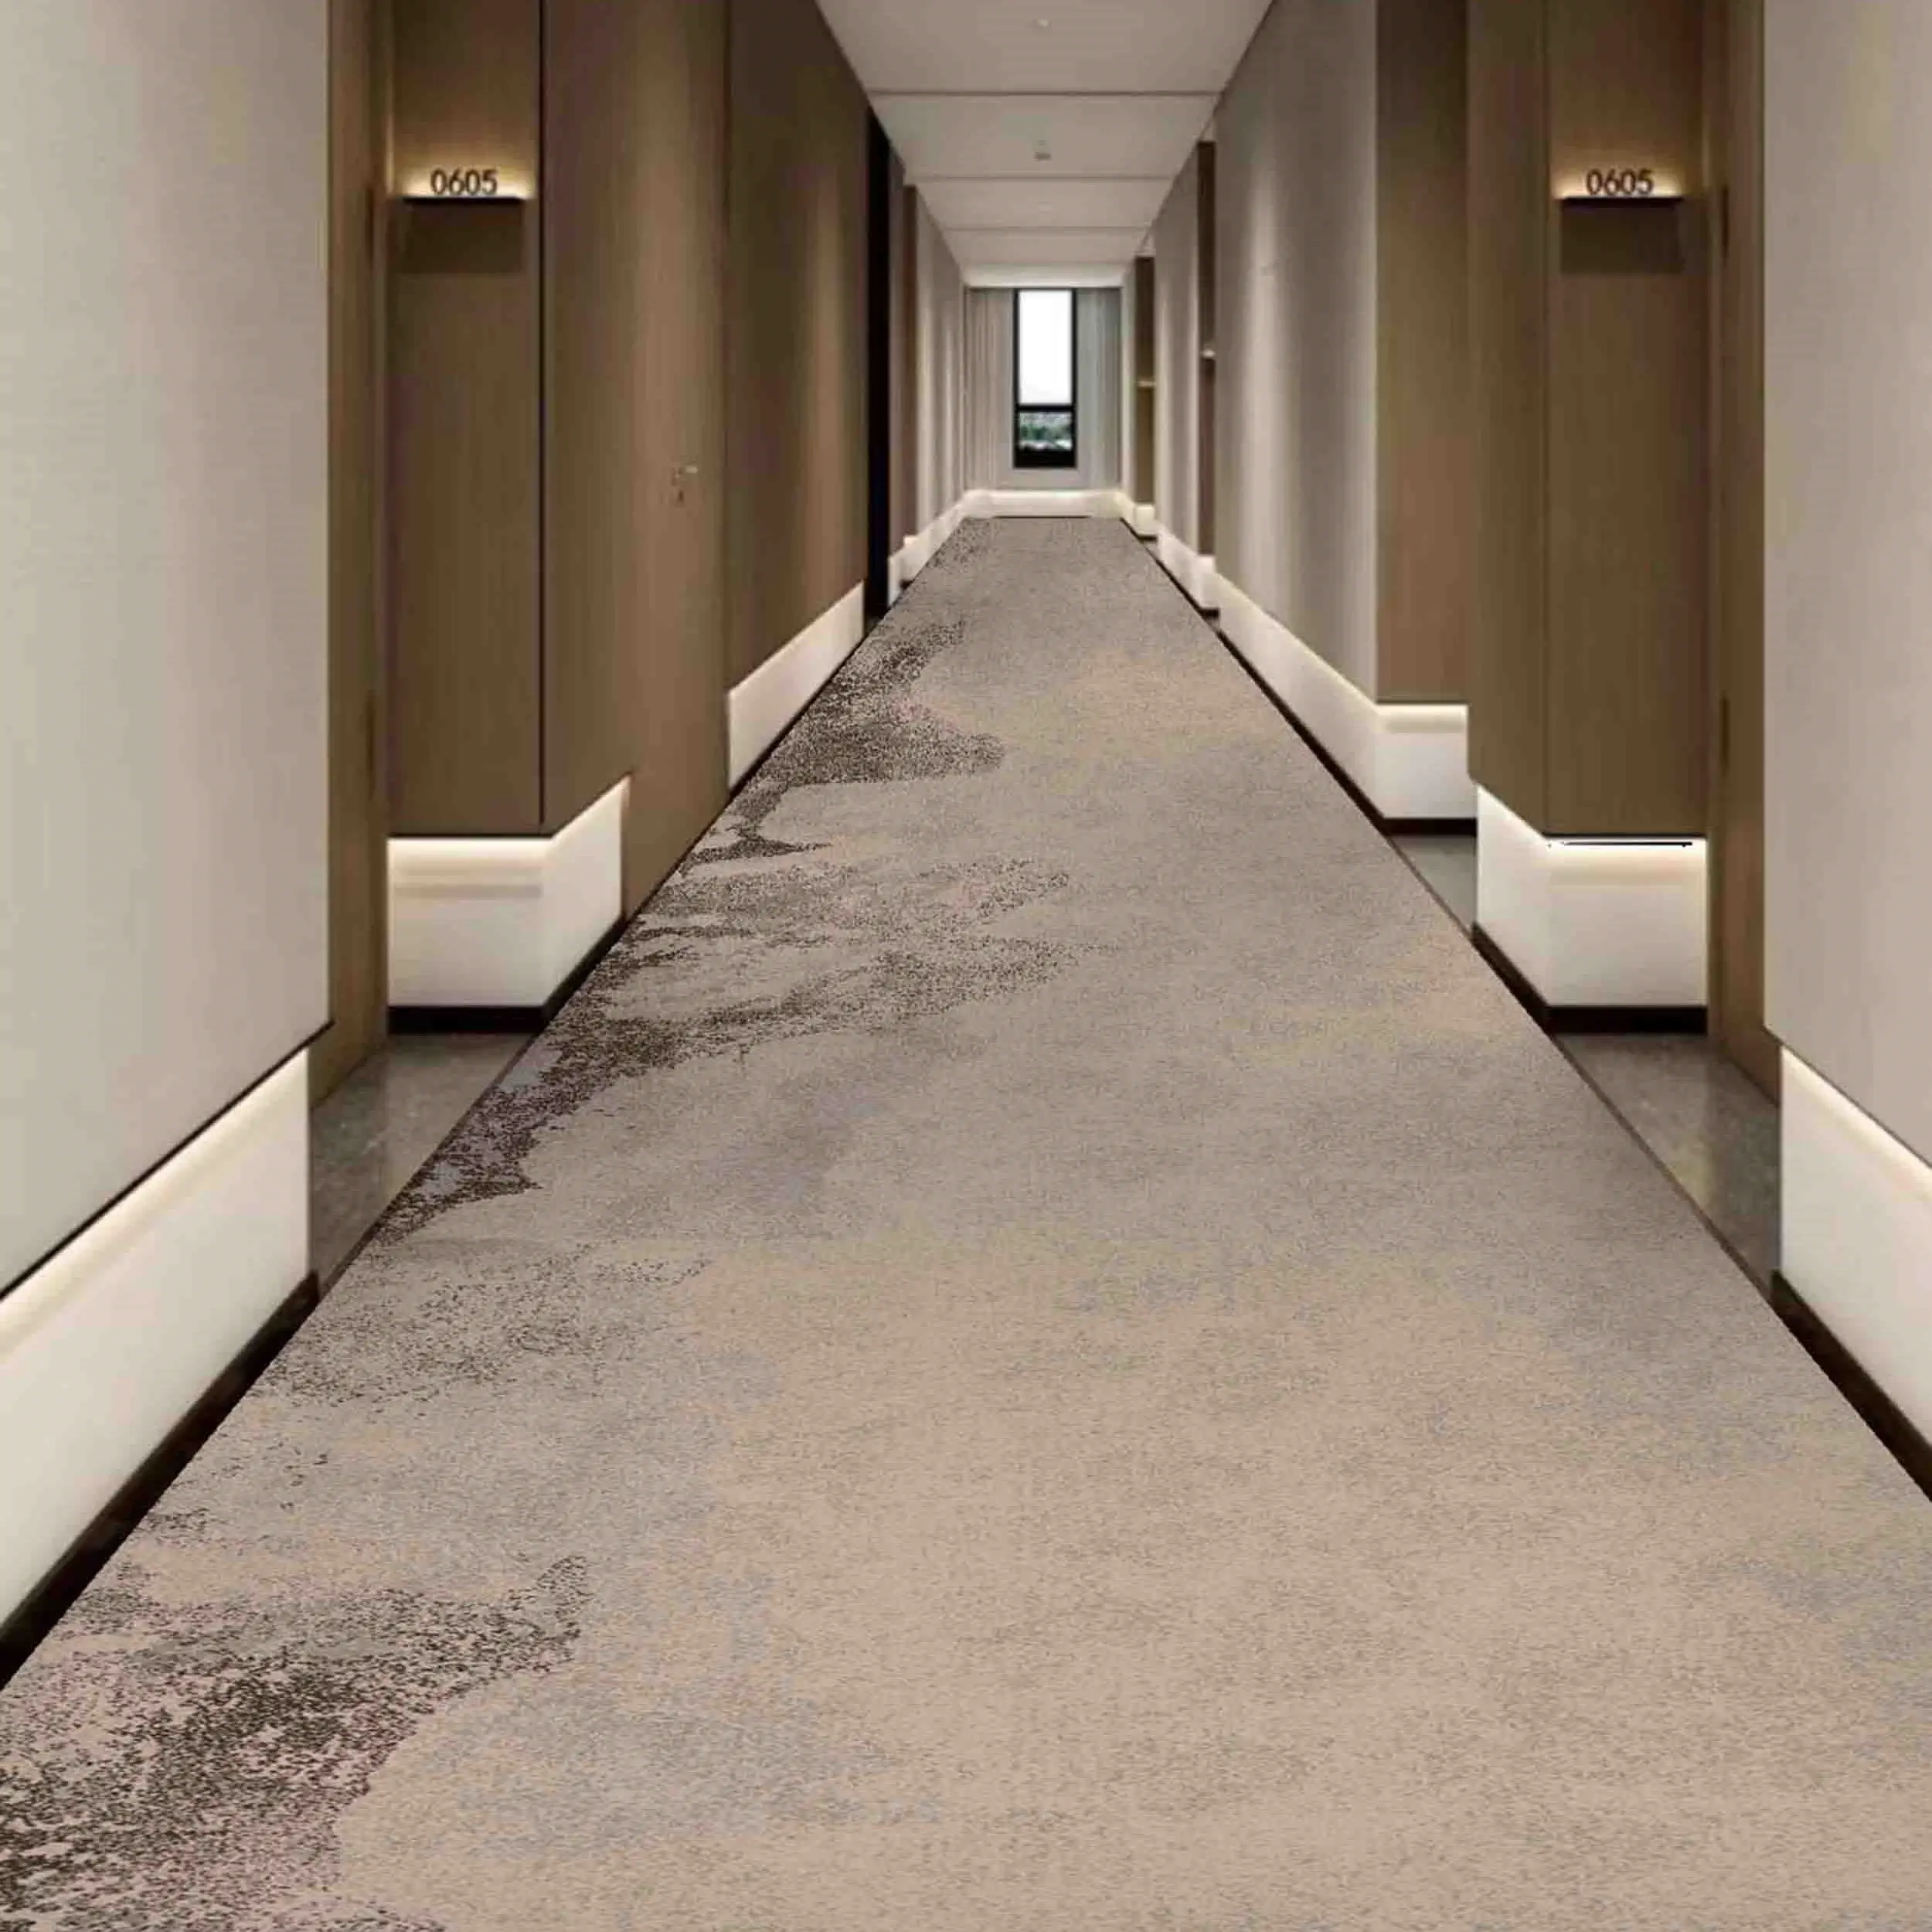 Тропа коридора отеля выделенная полная крышка напечатанный ковер нейлоновый материал различных цветов может быть настроен